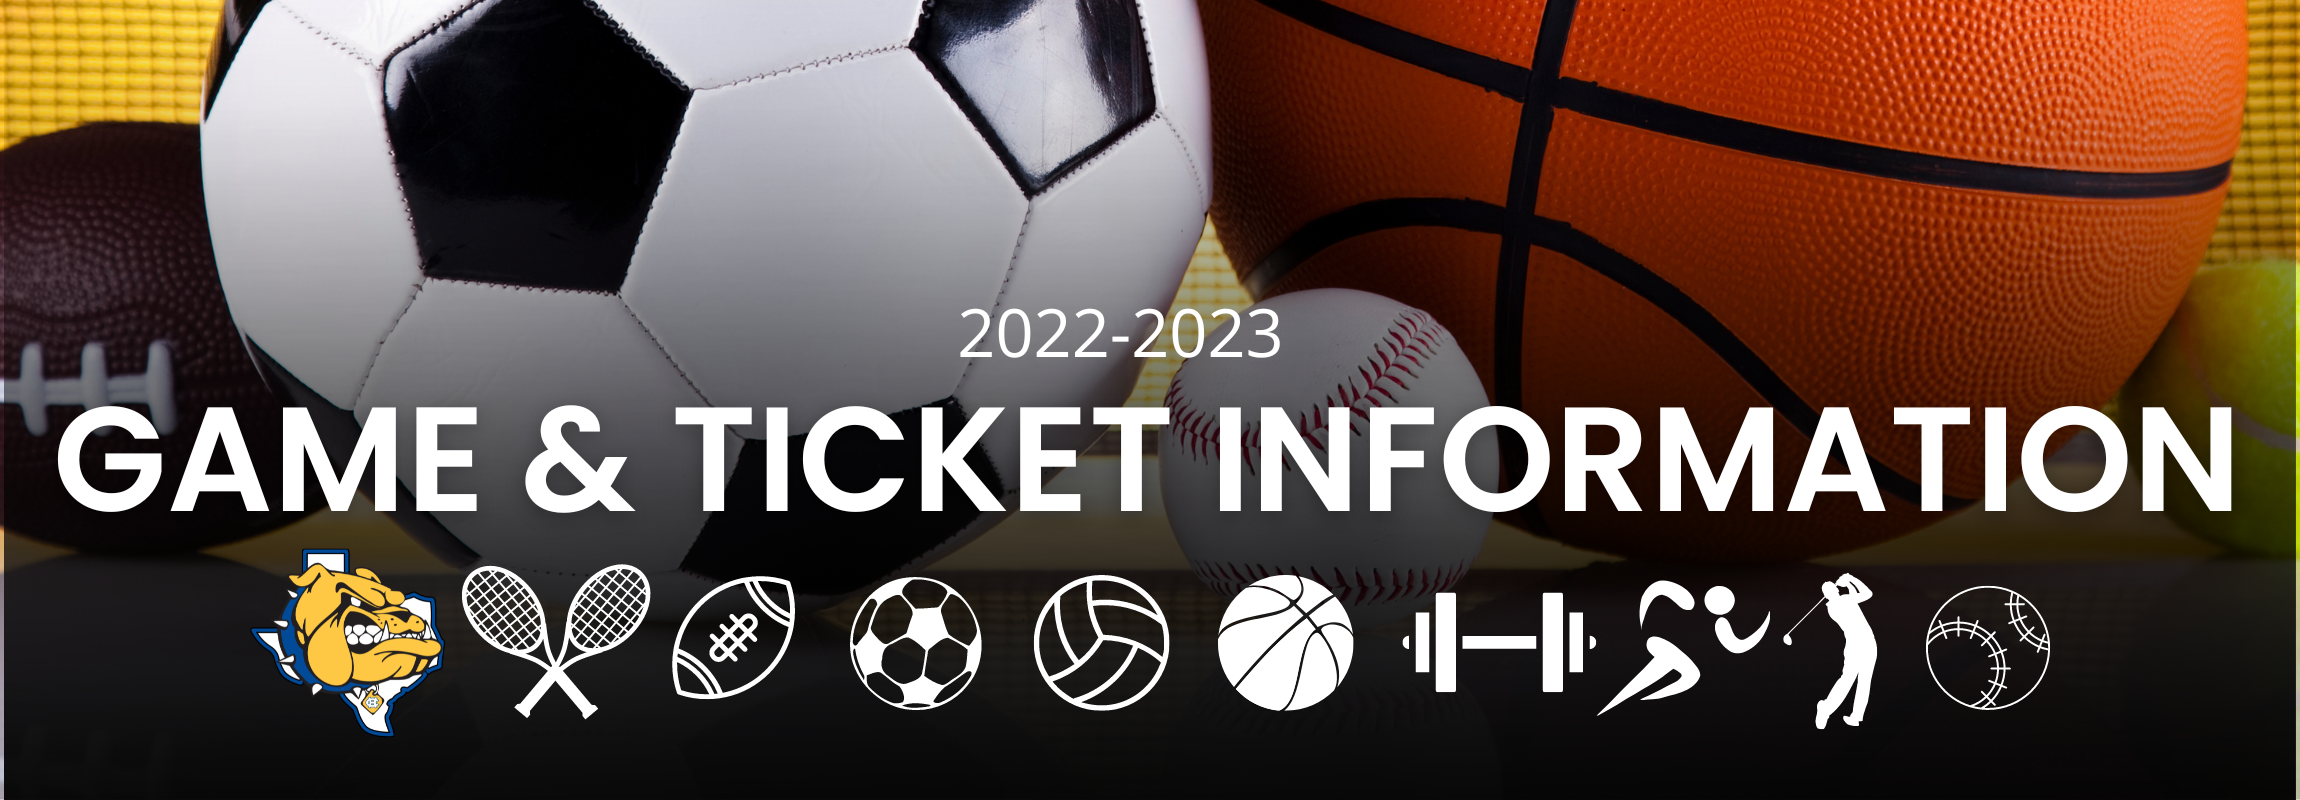 Game & Ticket Information 2022-2023